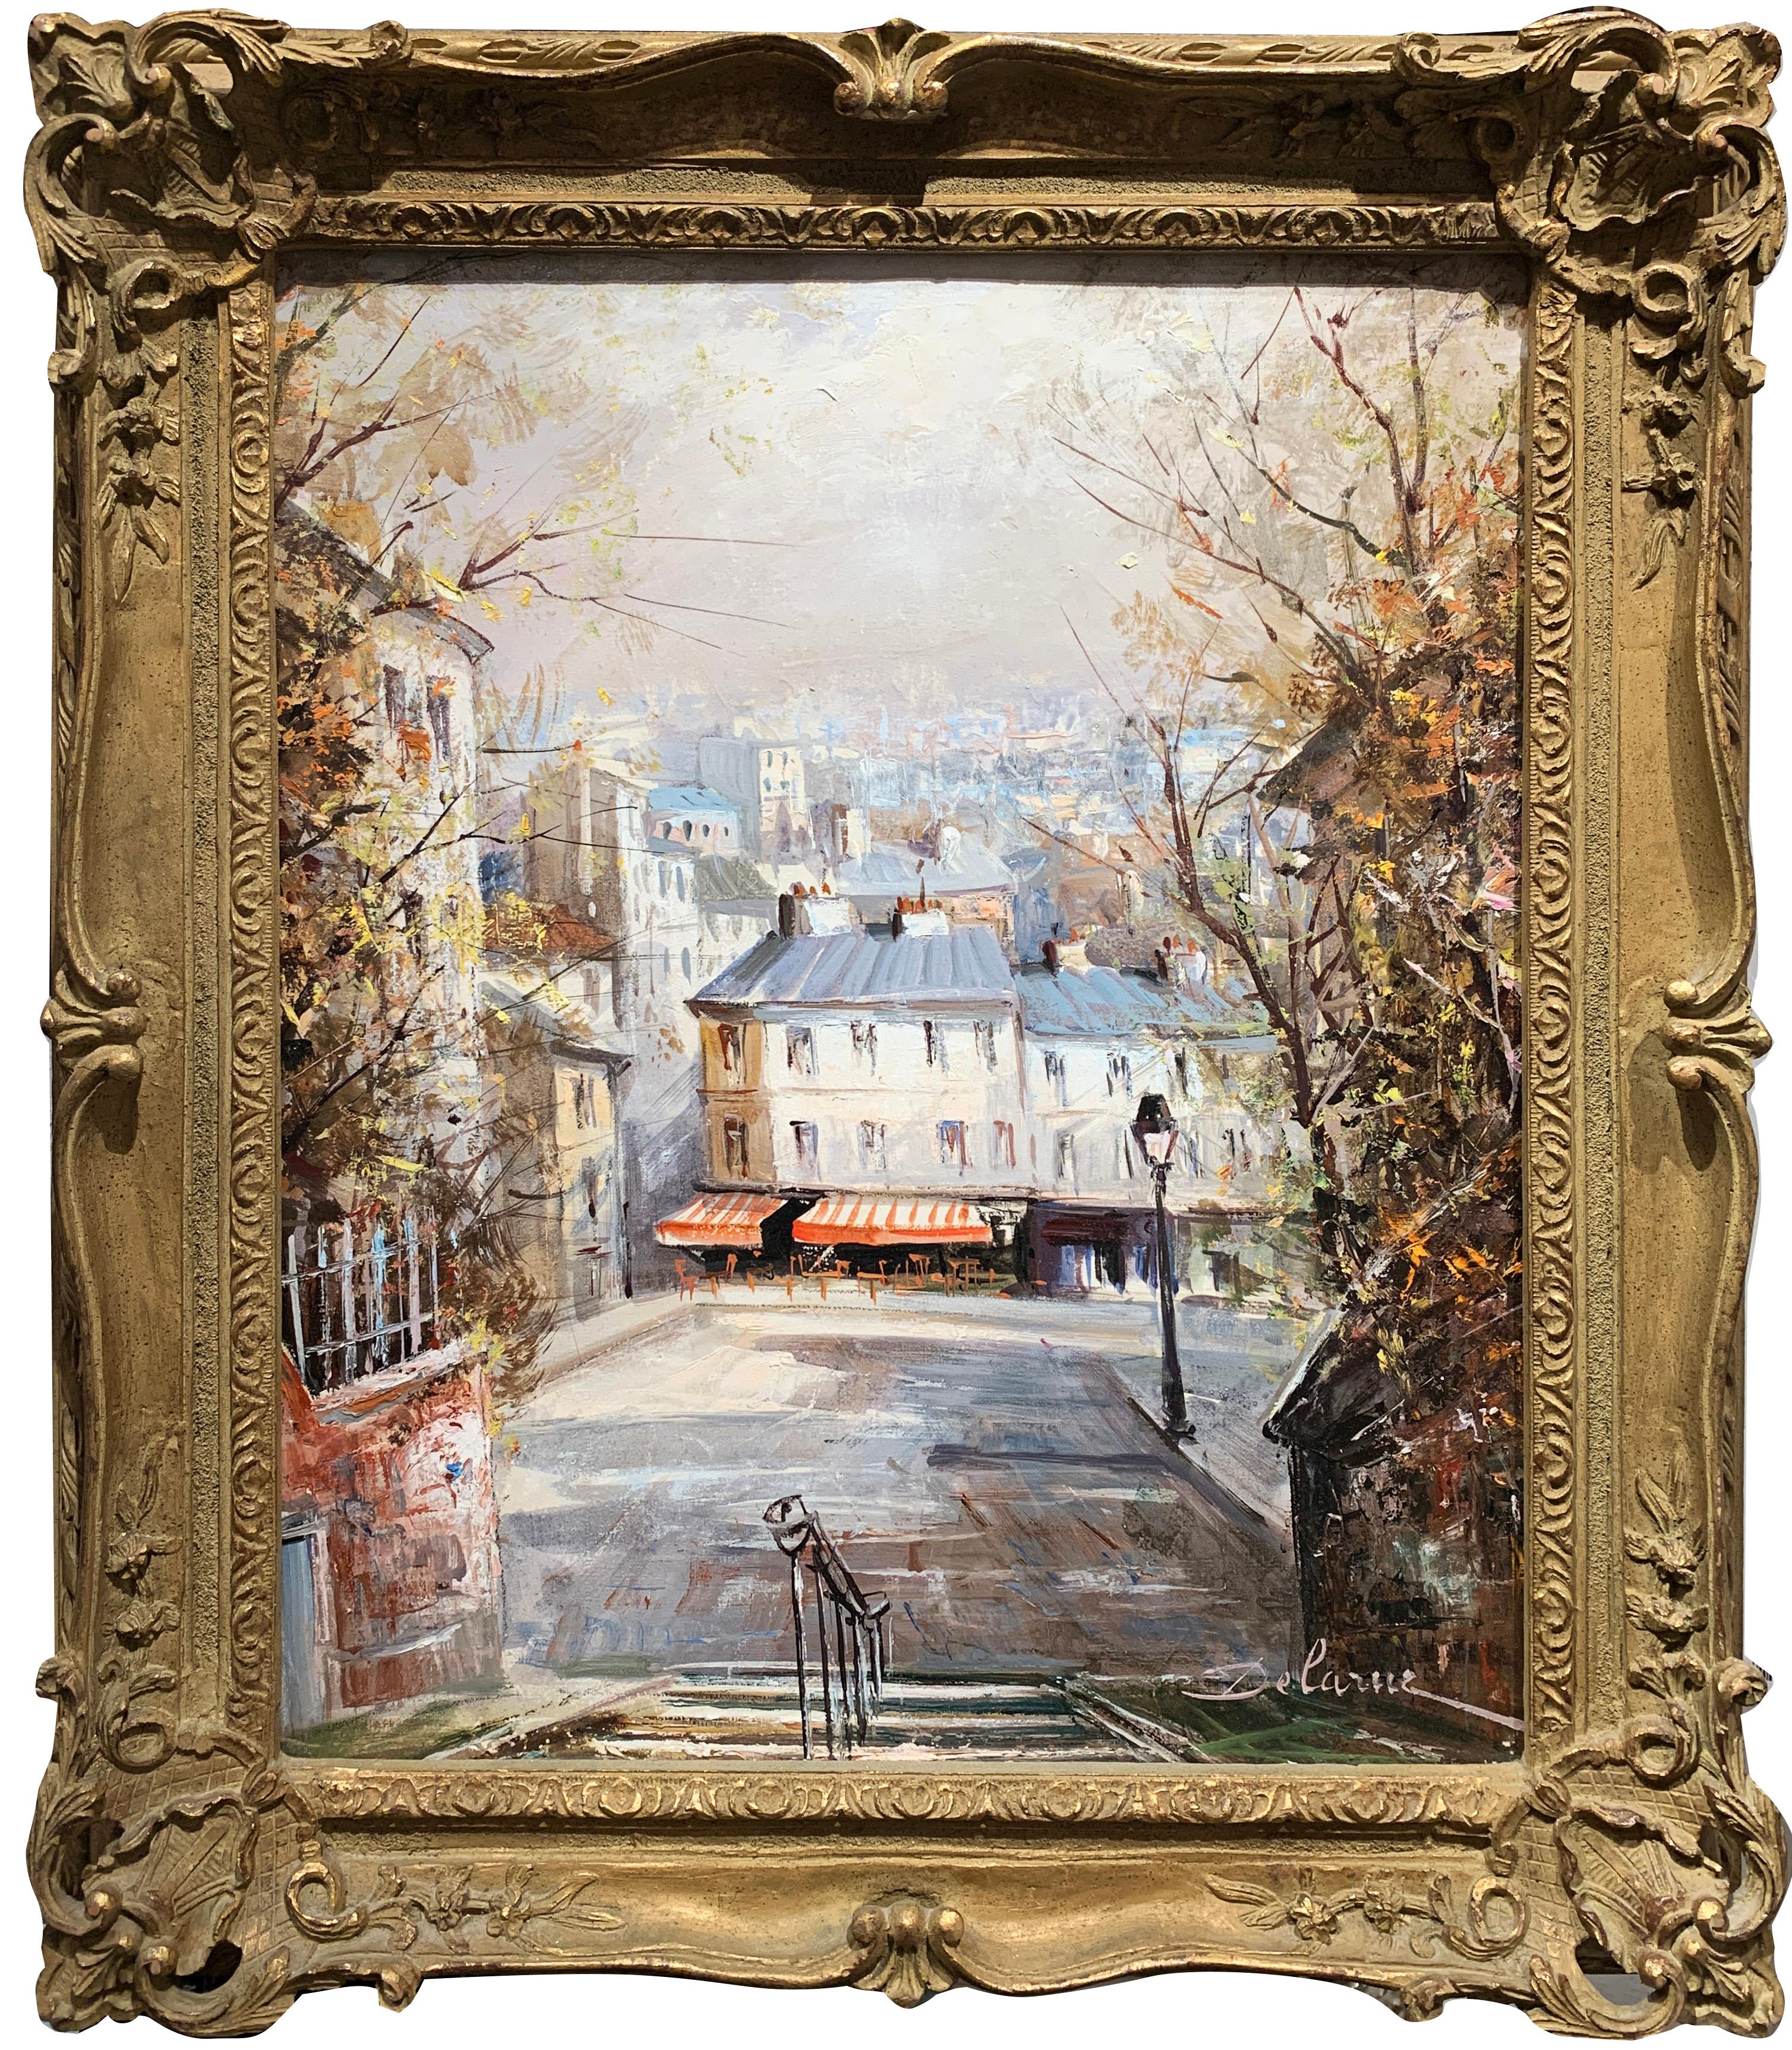 Lucien Delarue est connu dans le monde entier comme un artiste qui capture fidèlement l'atmosphère romantique de Paris. Son célèbre sujet des 